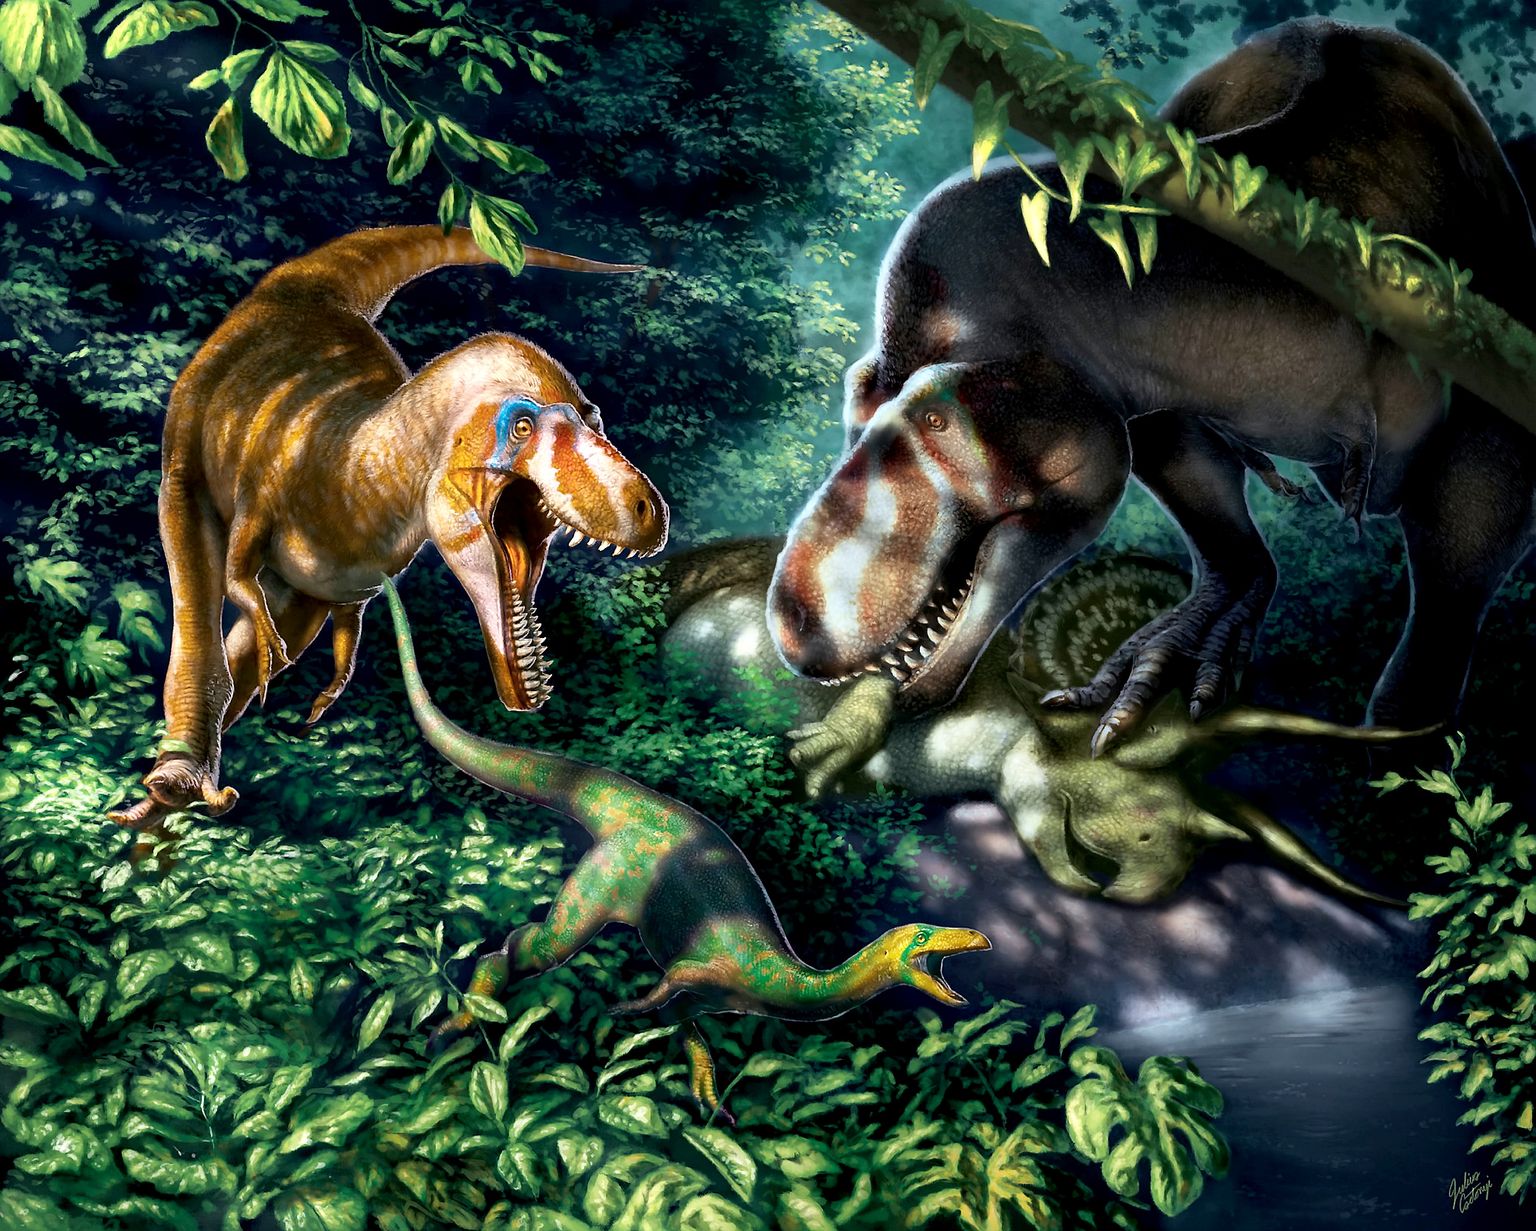 Pilt on illustatiivne. Joonis jäädvustab üldtuntud Tyrannosaurus rexi kahes eas.